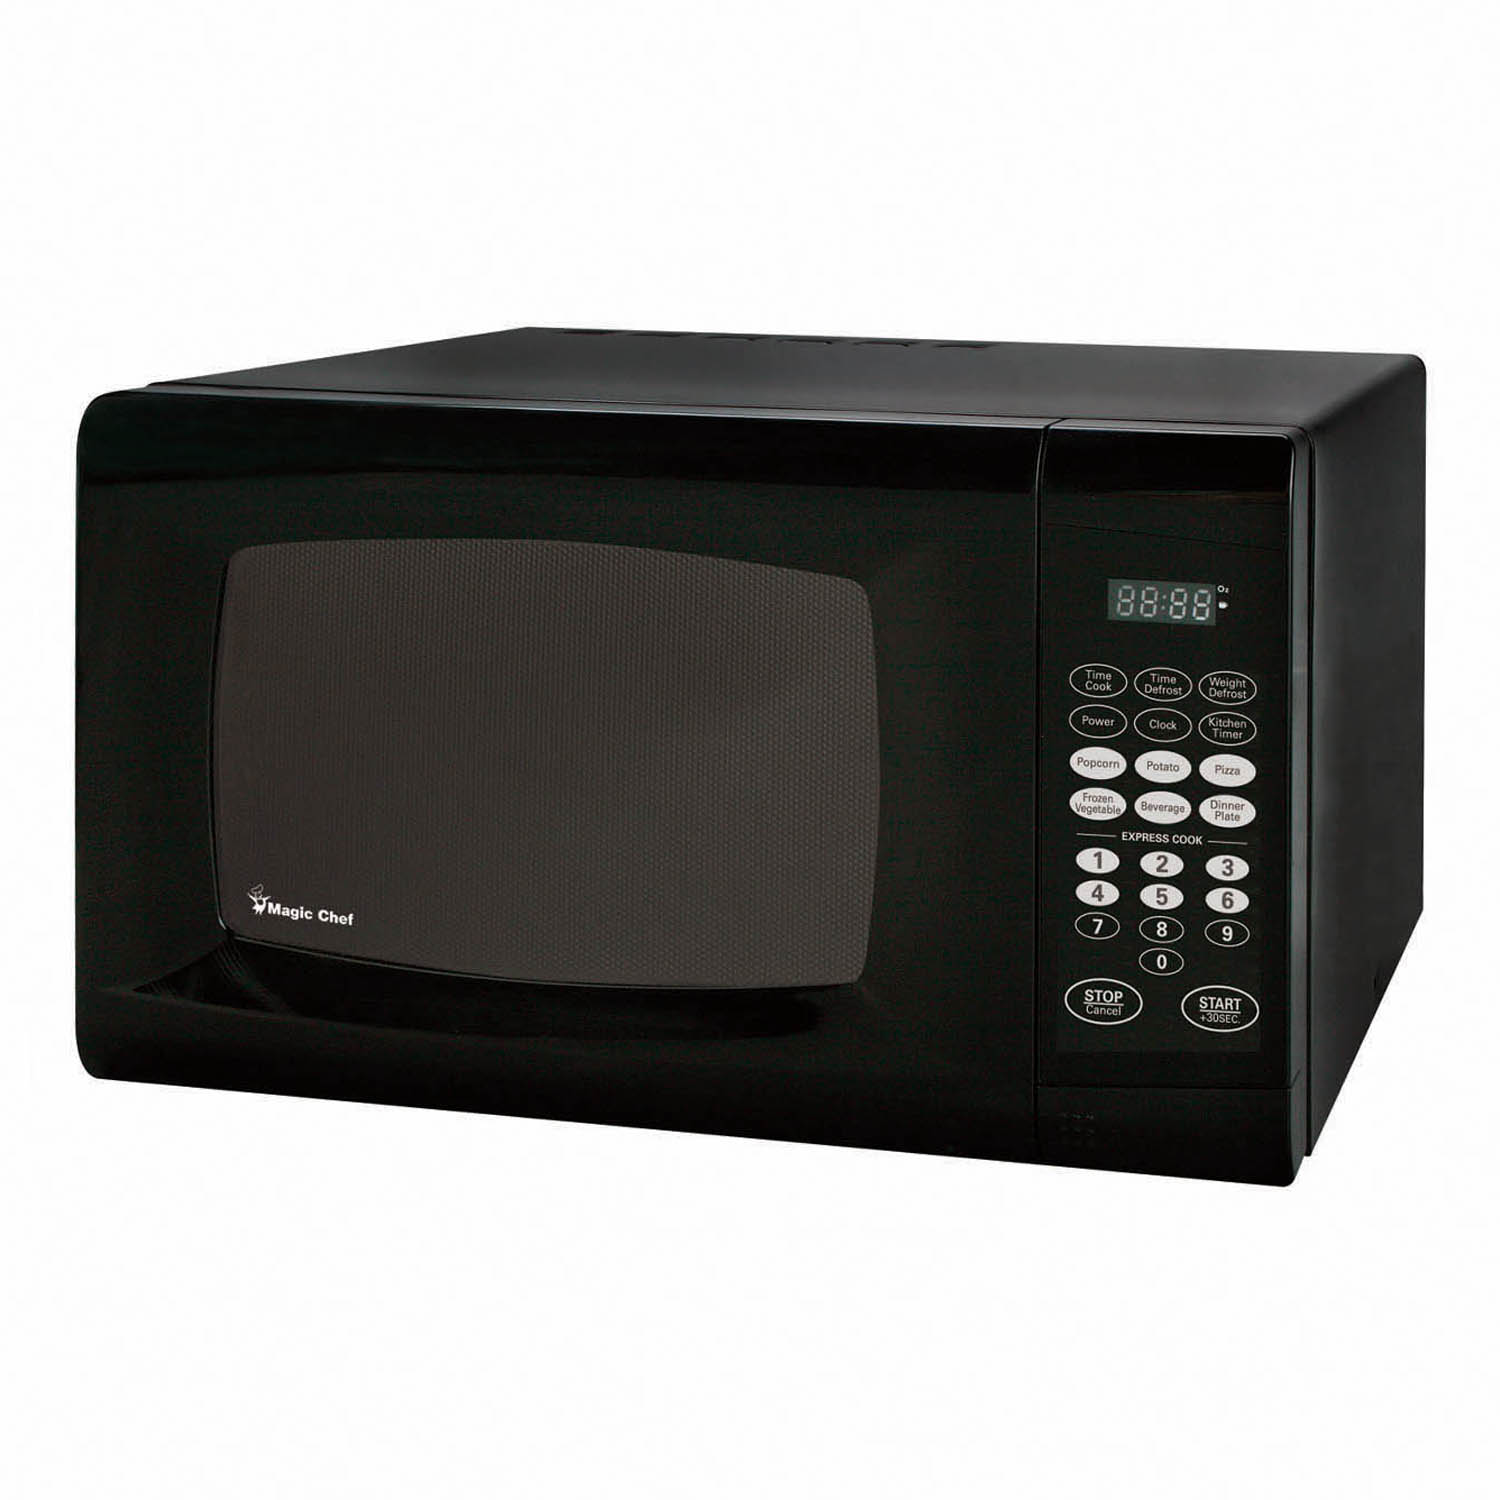 900 Watt Microwave in Black - image 1 of 4